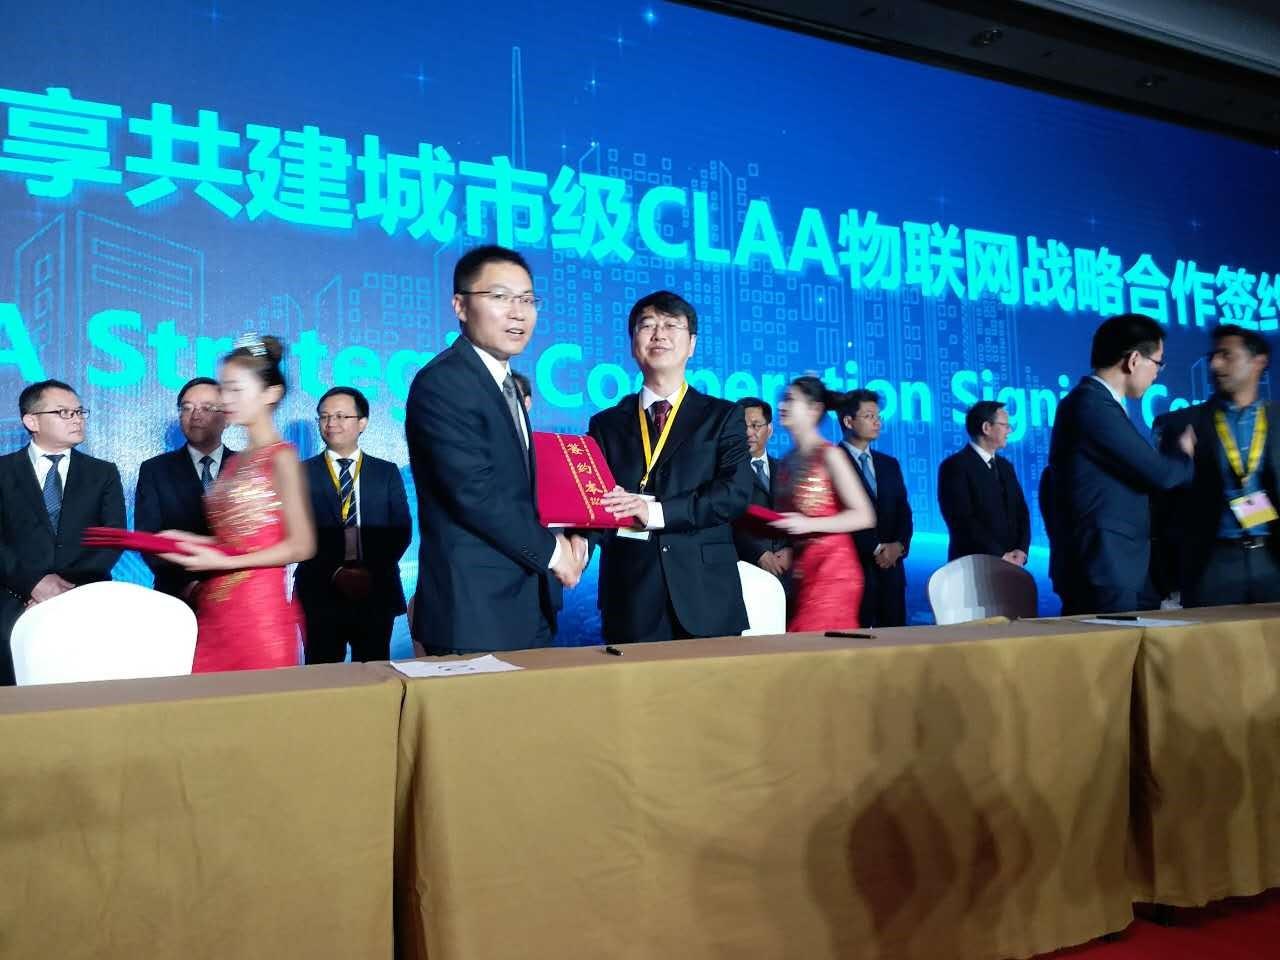 共迎物联网时代 九天微星受邀亮相2017中国LoRa物联网国际峰会